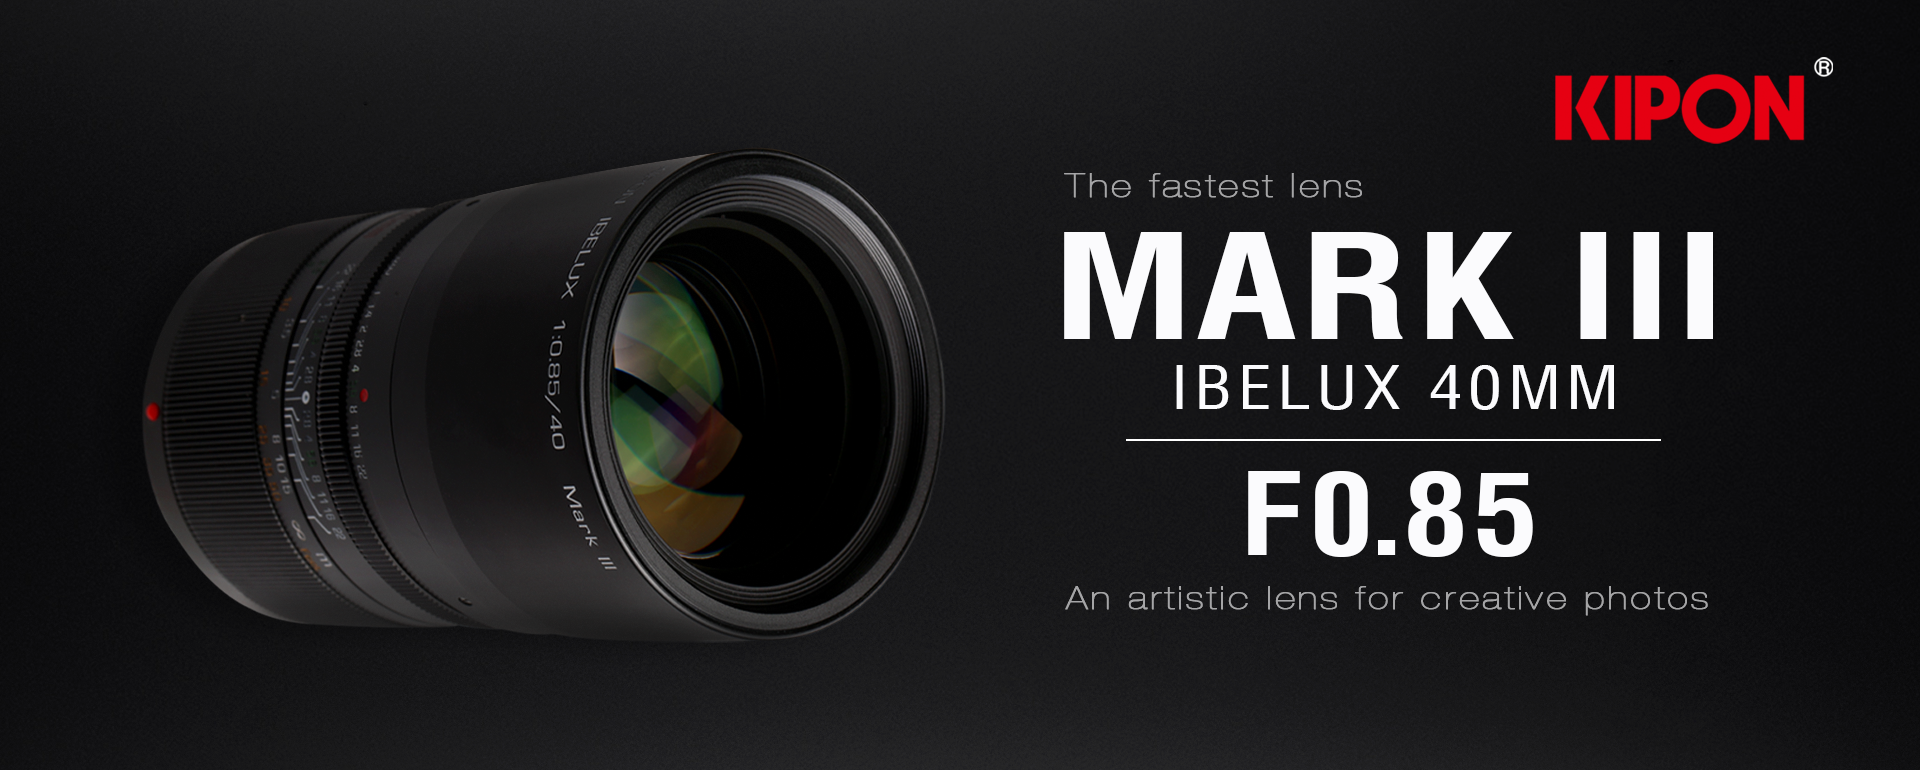 KIPON IBELUX 40mm f/0.85 Mark III Coming Soon - Fuji Addict